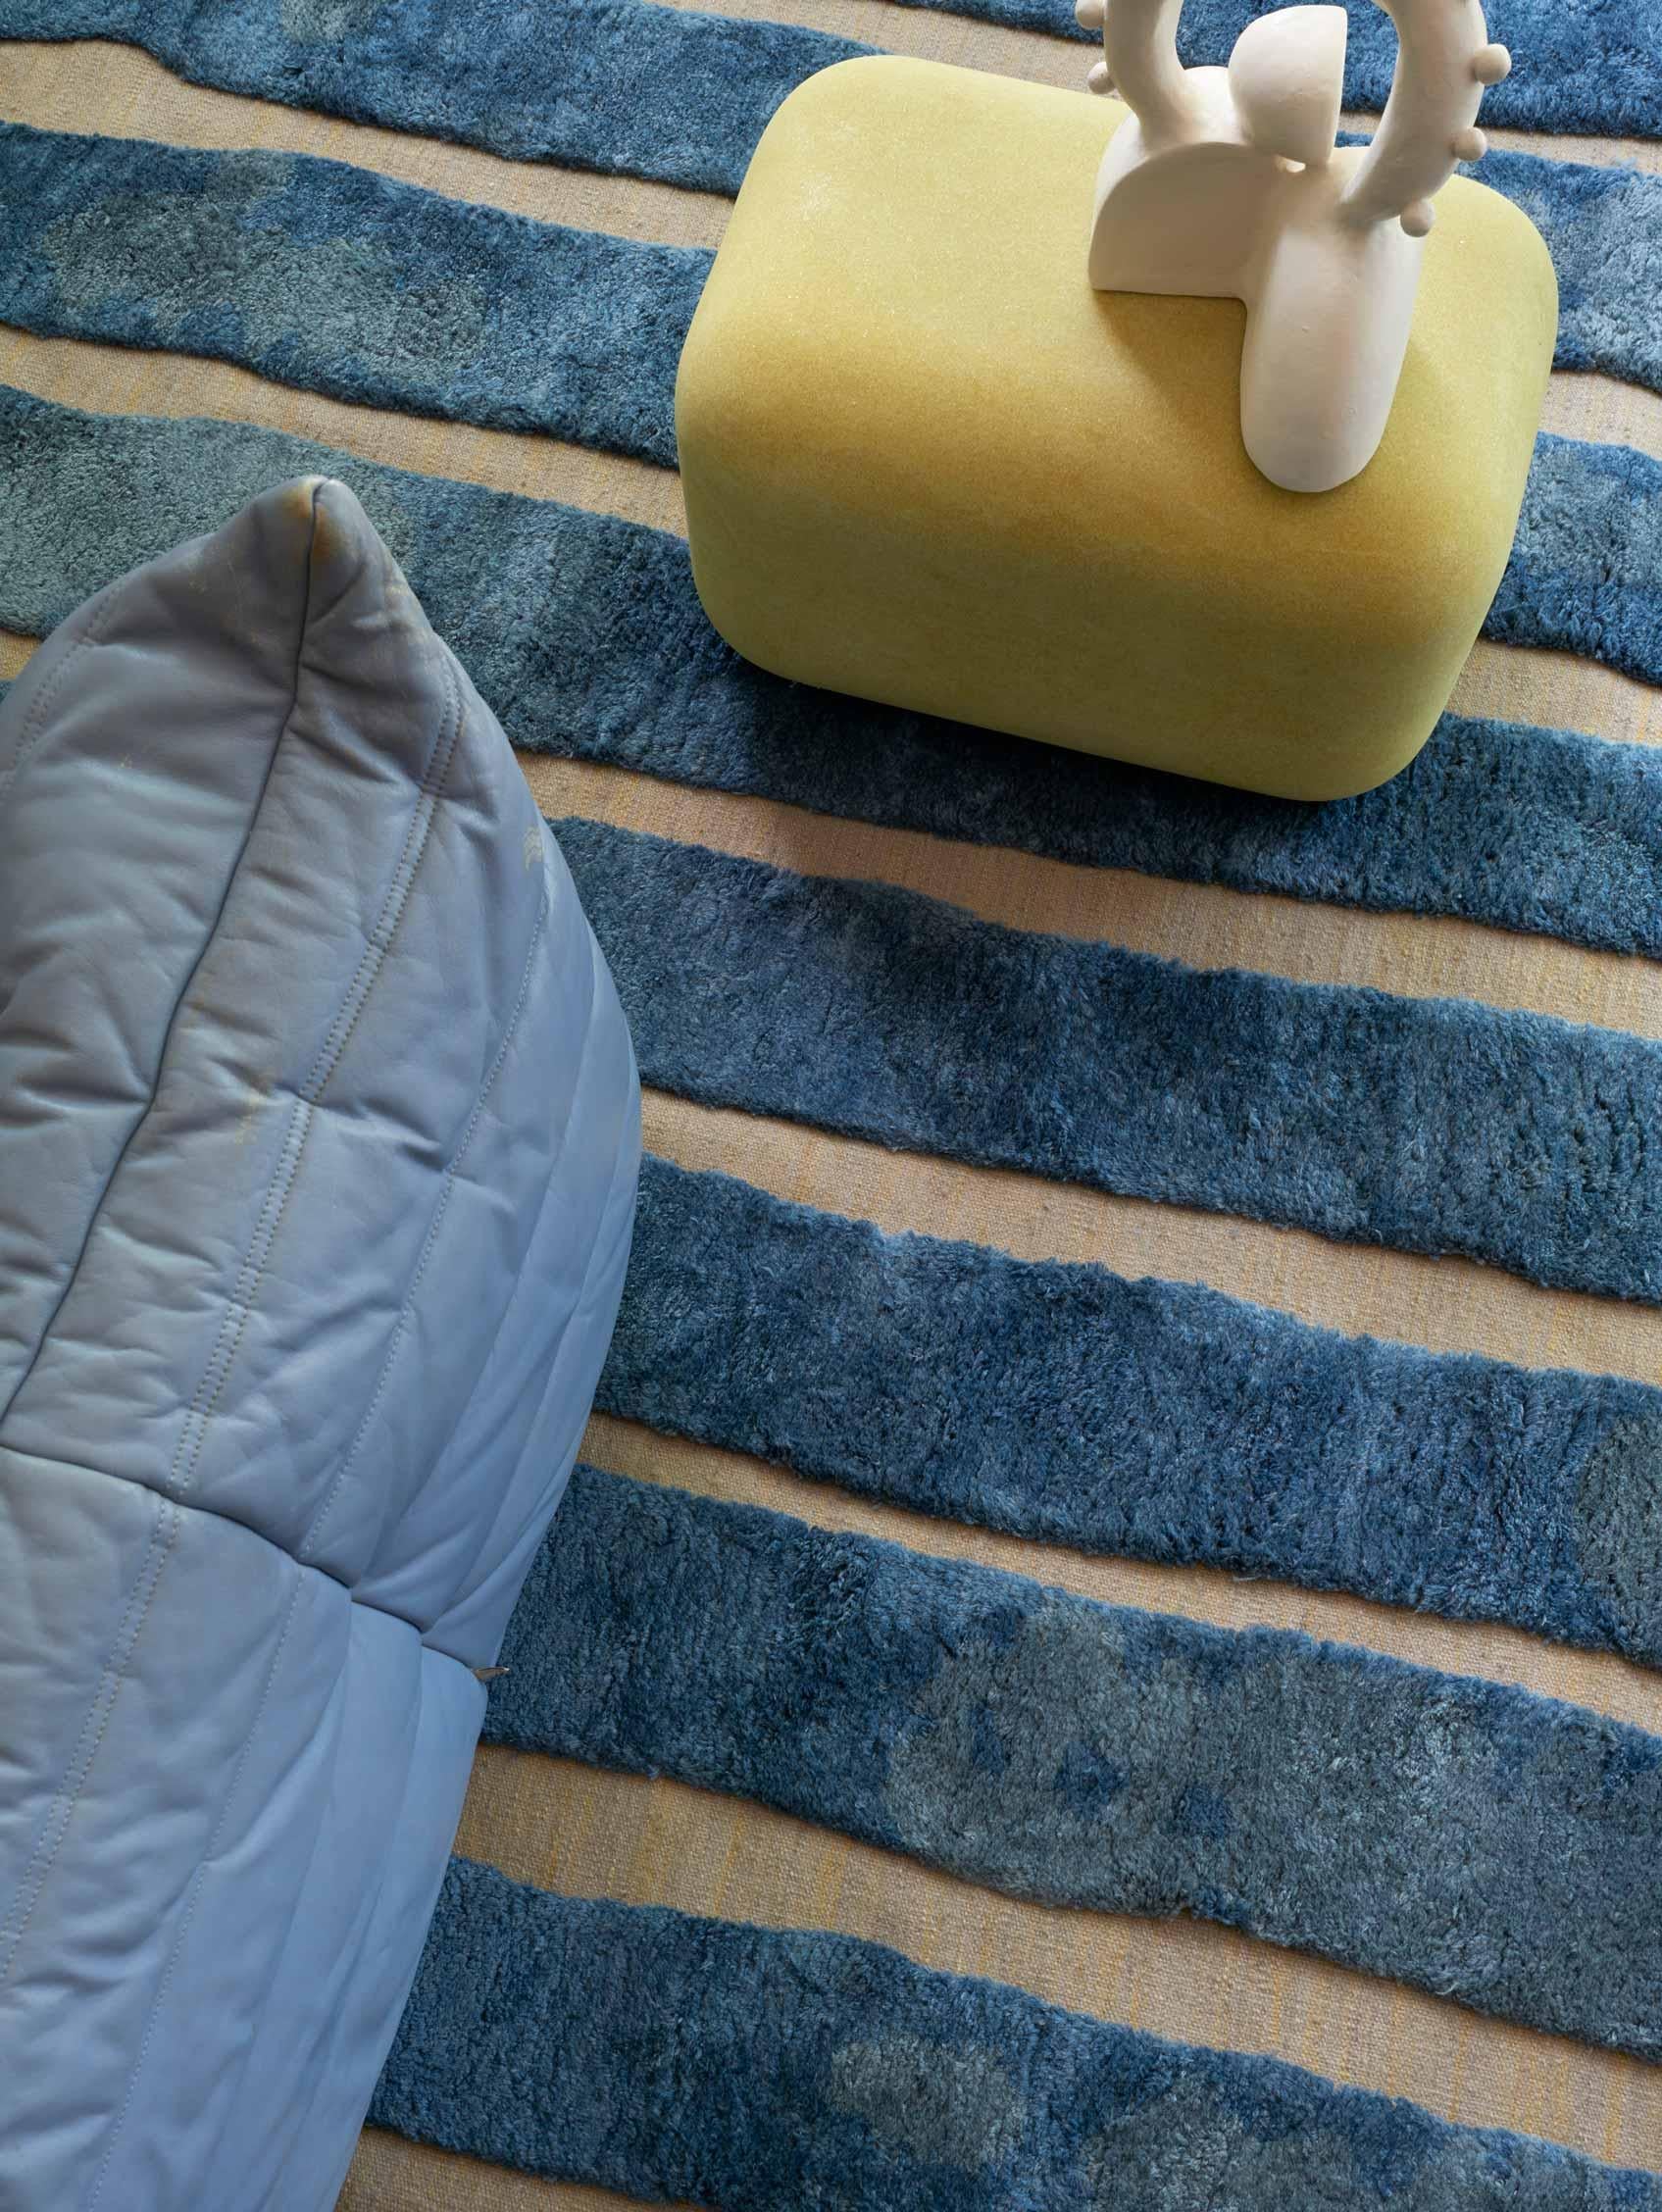 Muster des Teppichs: Bold Stripe - Thalassa
MATERIAL: Merino Wool Pile/ New Zealand Wool Flat-weave
Qualität: Wolle Flachgewebe & marokkanischer Flor, 10mm Flor, handgewebt 
Größe: 8'-0